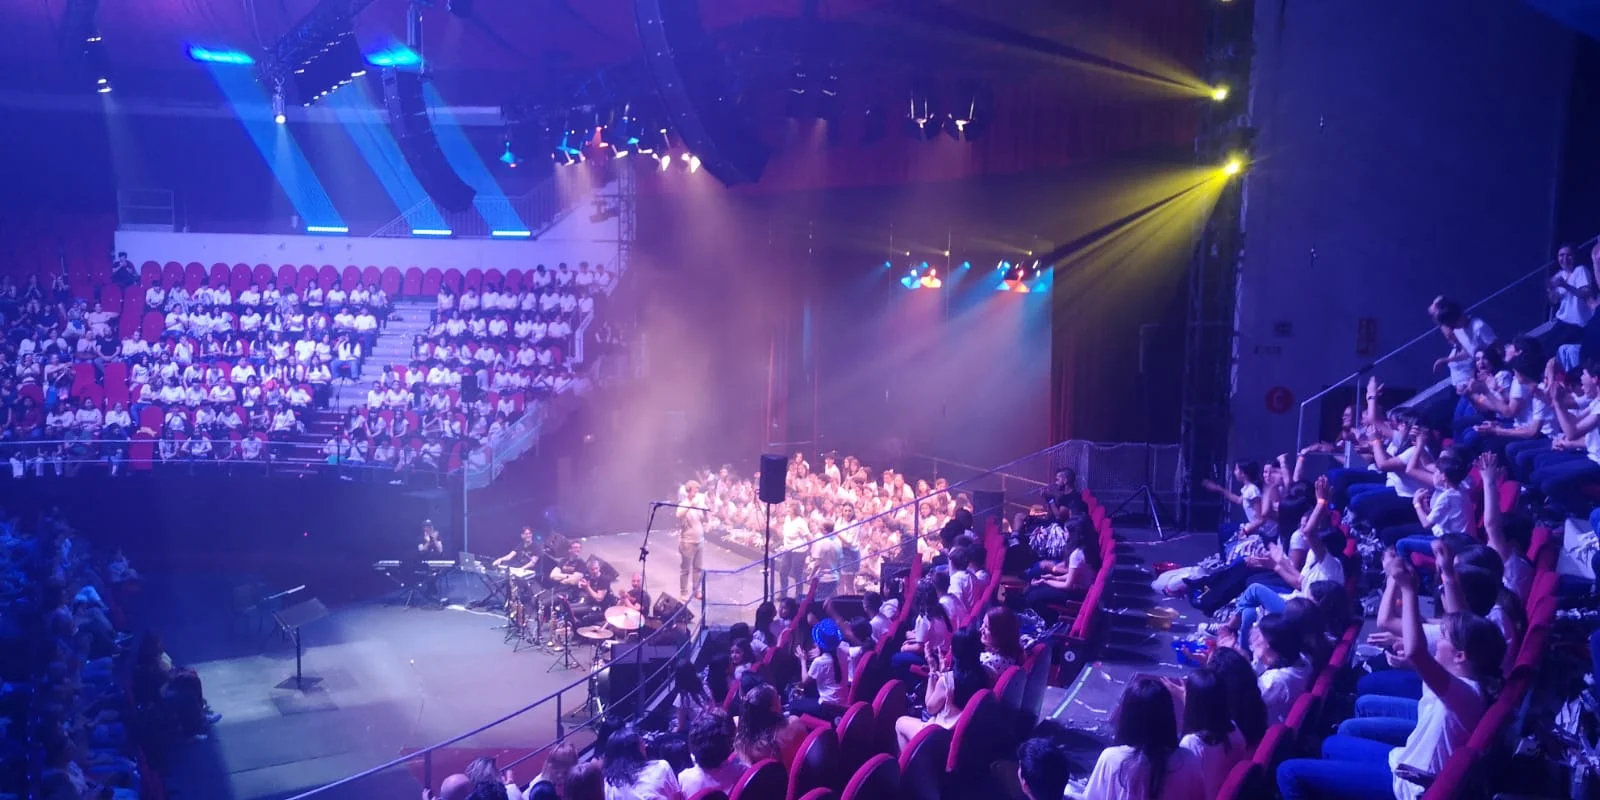 Musical Proyecto "Ubuntu" 1ºESO Teatro Circo Price de Madrid